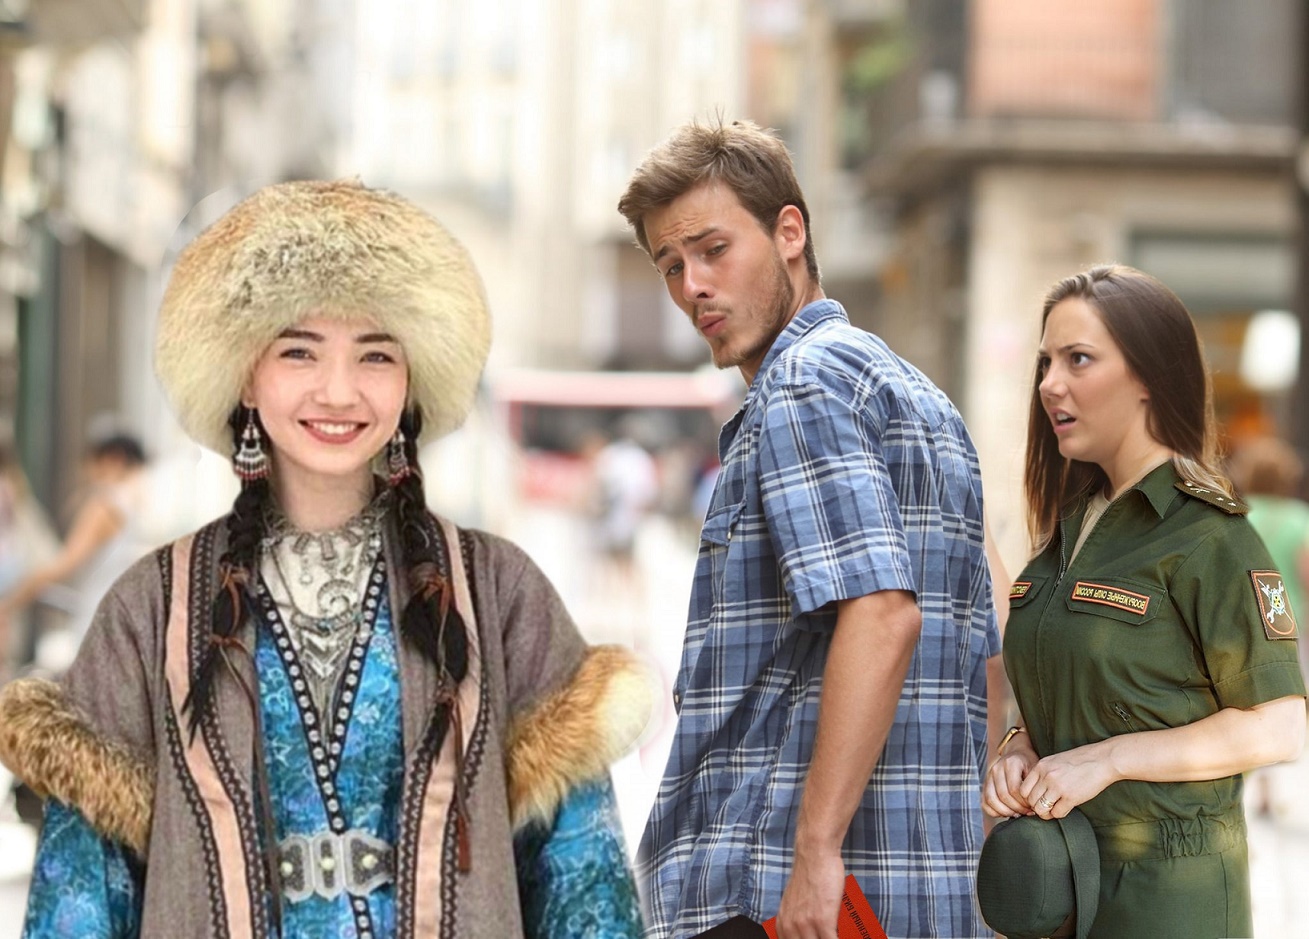 Kazakh me. Парень оборачивается. Парень оглядывается на девушку Мем. С днём девушки современные картинки. Мем оборачивается на девушку Казахстан.